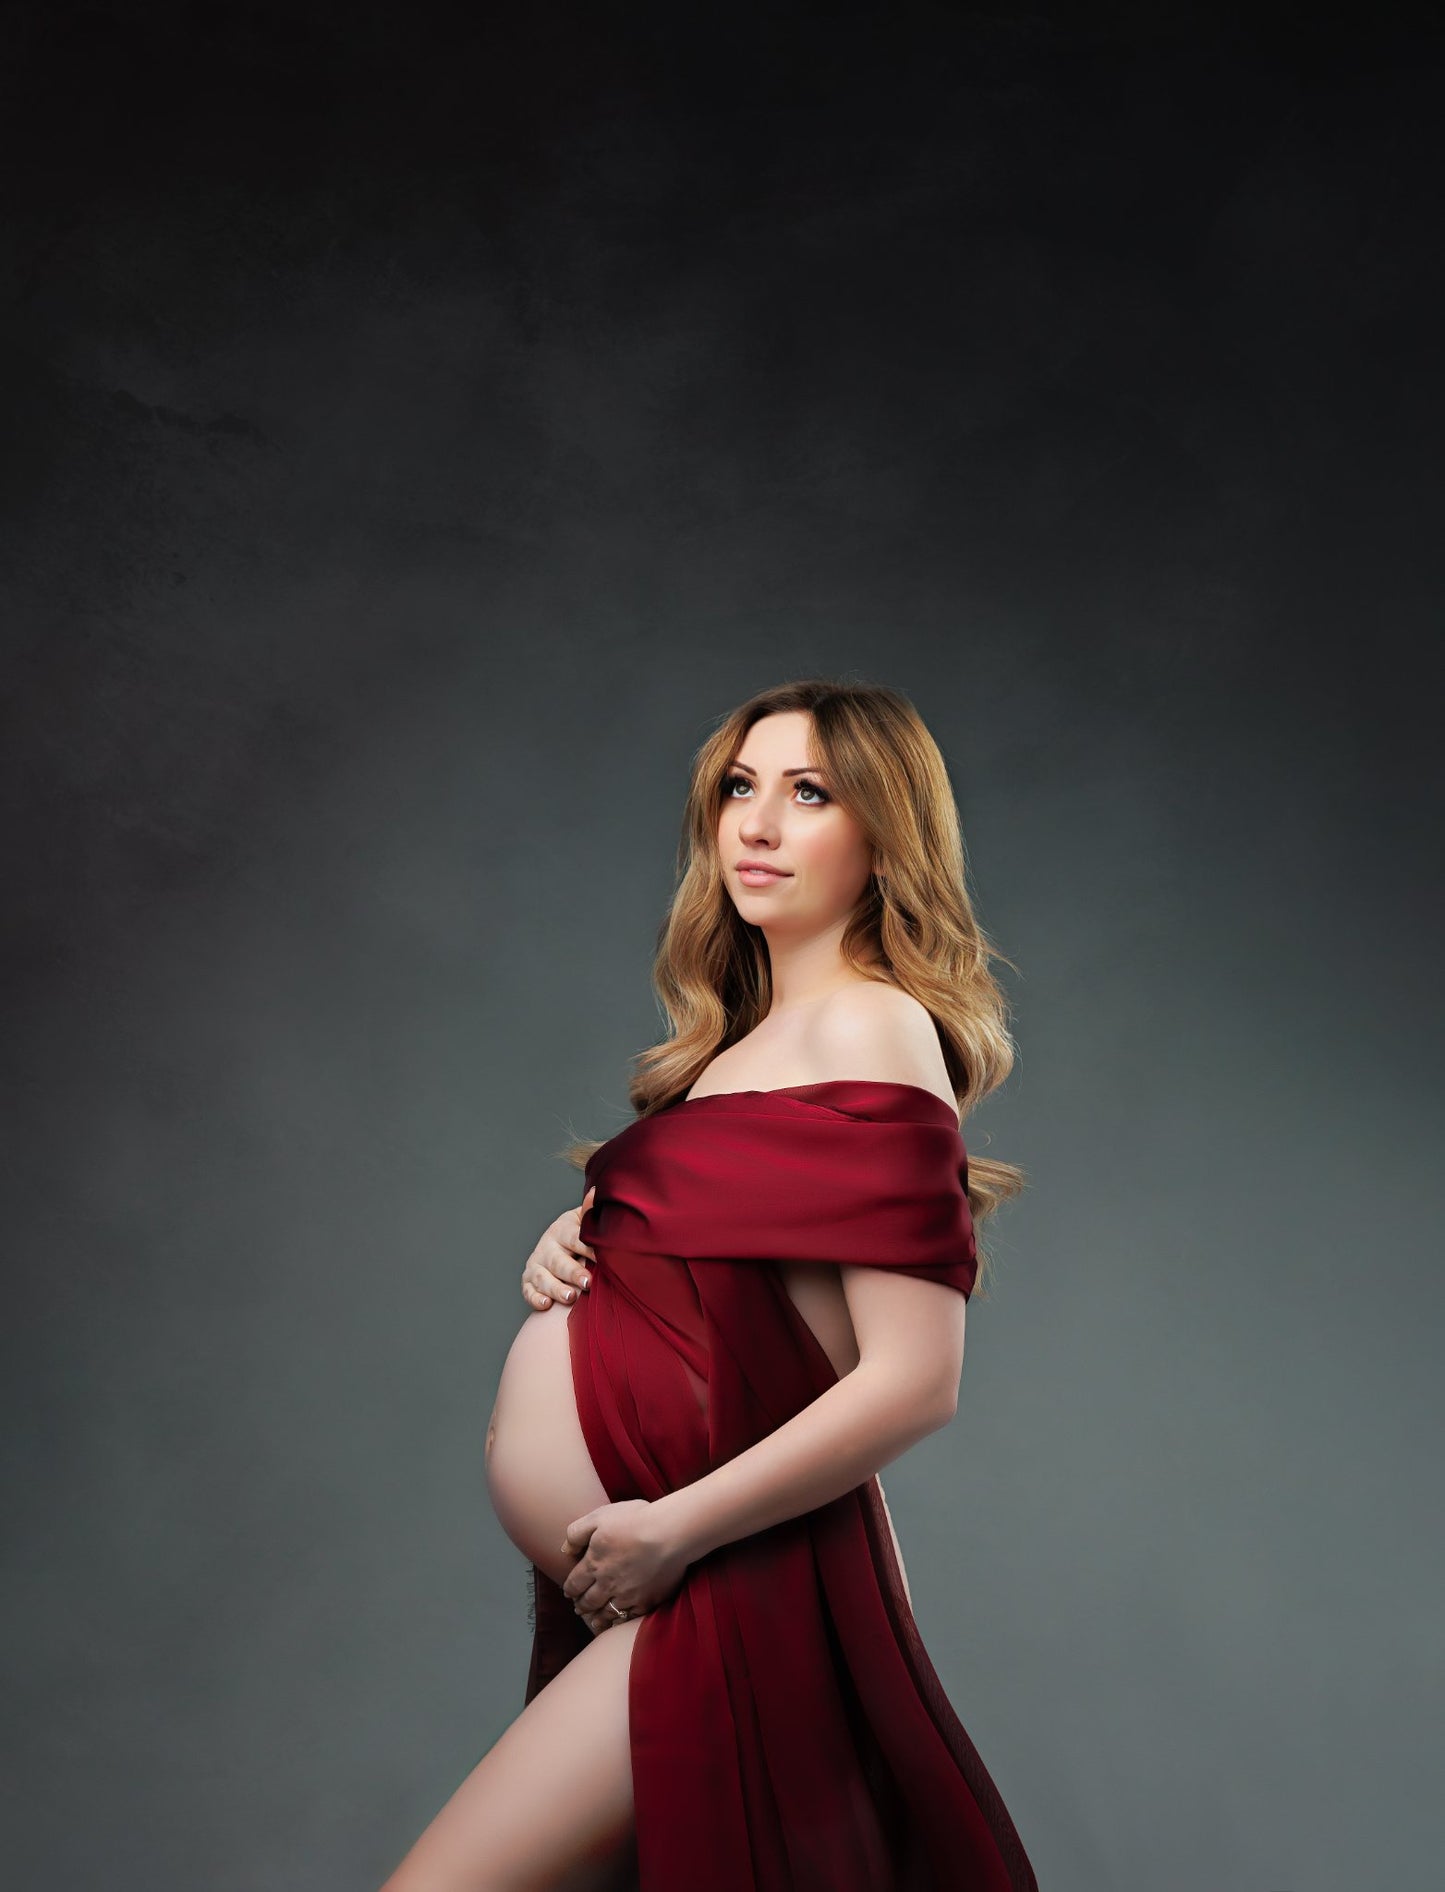 Burgundy silky Chiffon Fabric - maternity photoshoot dress